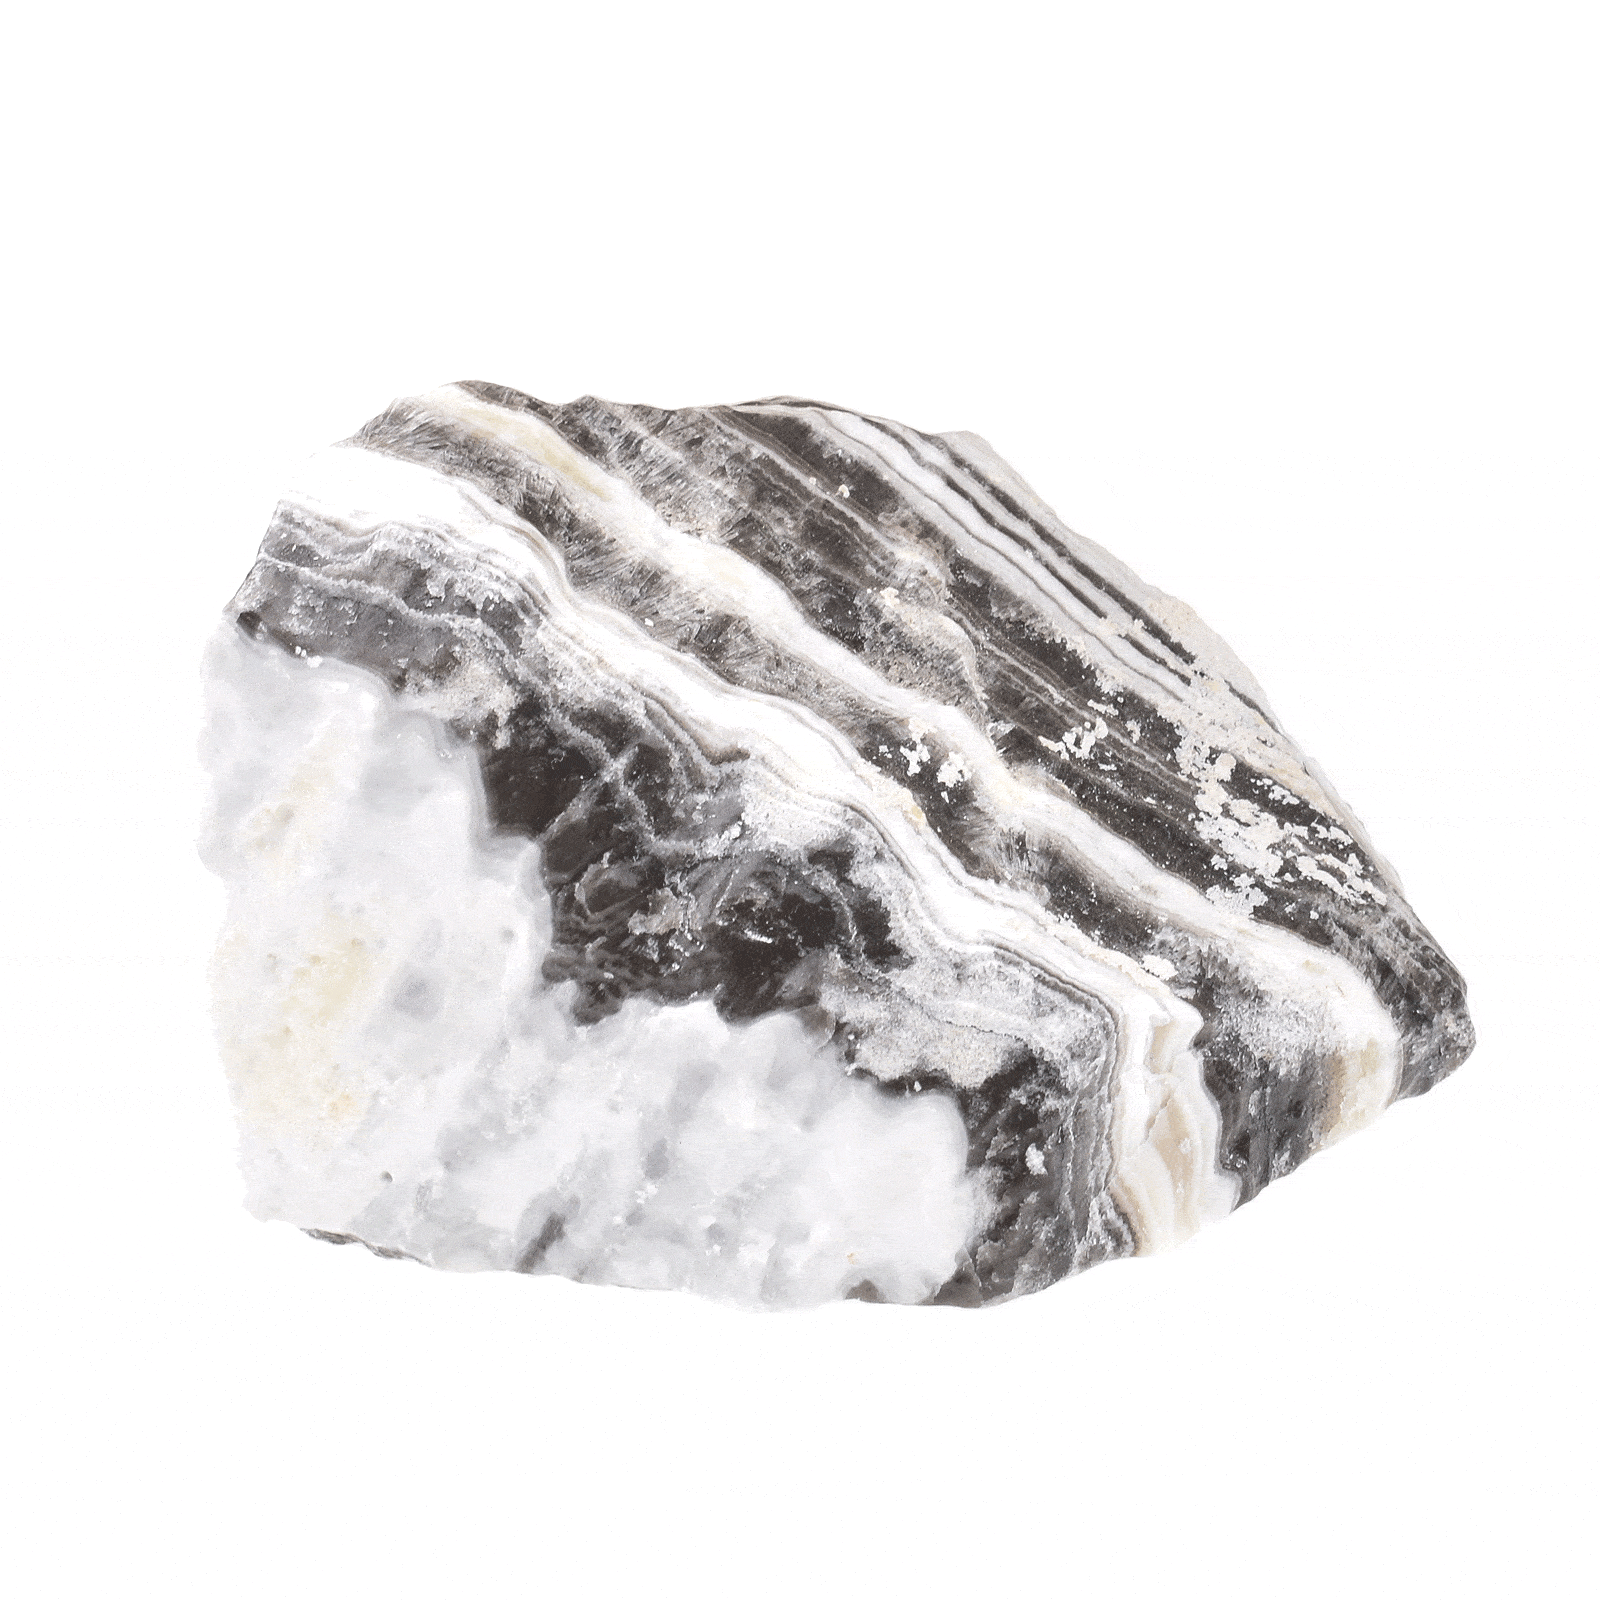 Ακατέργαστο κομμάτι φυσικής πέτρας Καλσίτη Ζέβρα, μεγέθους 8cm. Αγοράστε online shop.